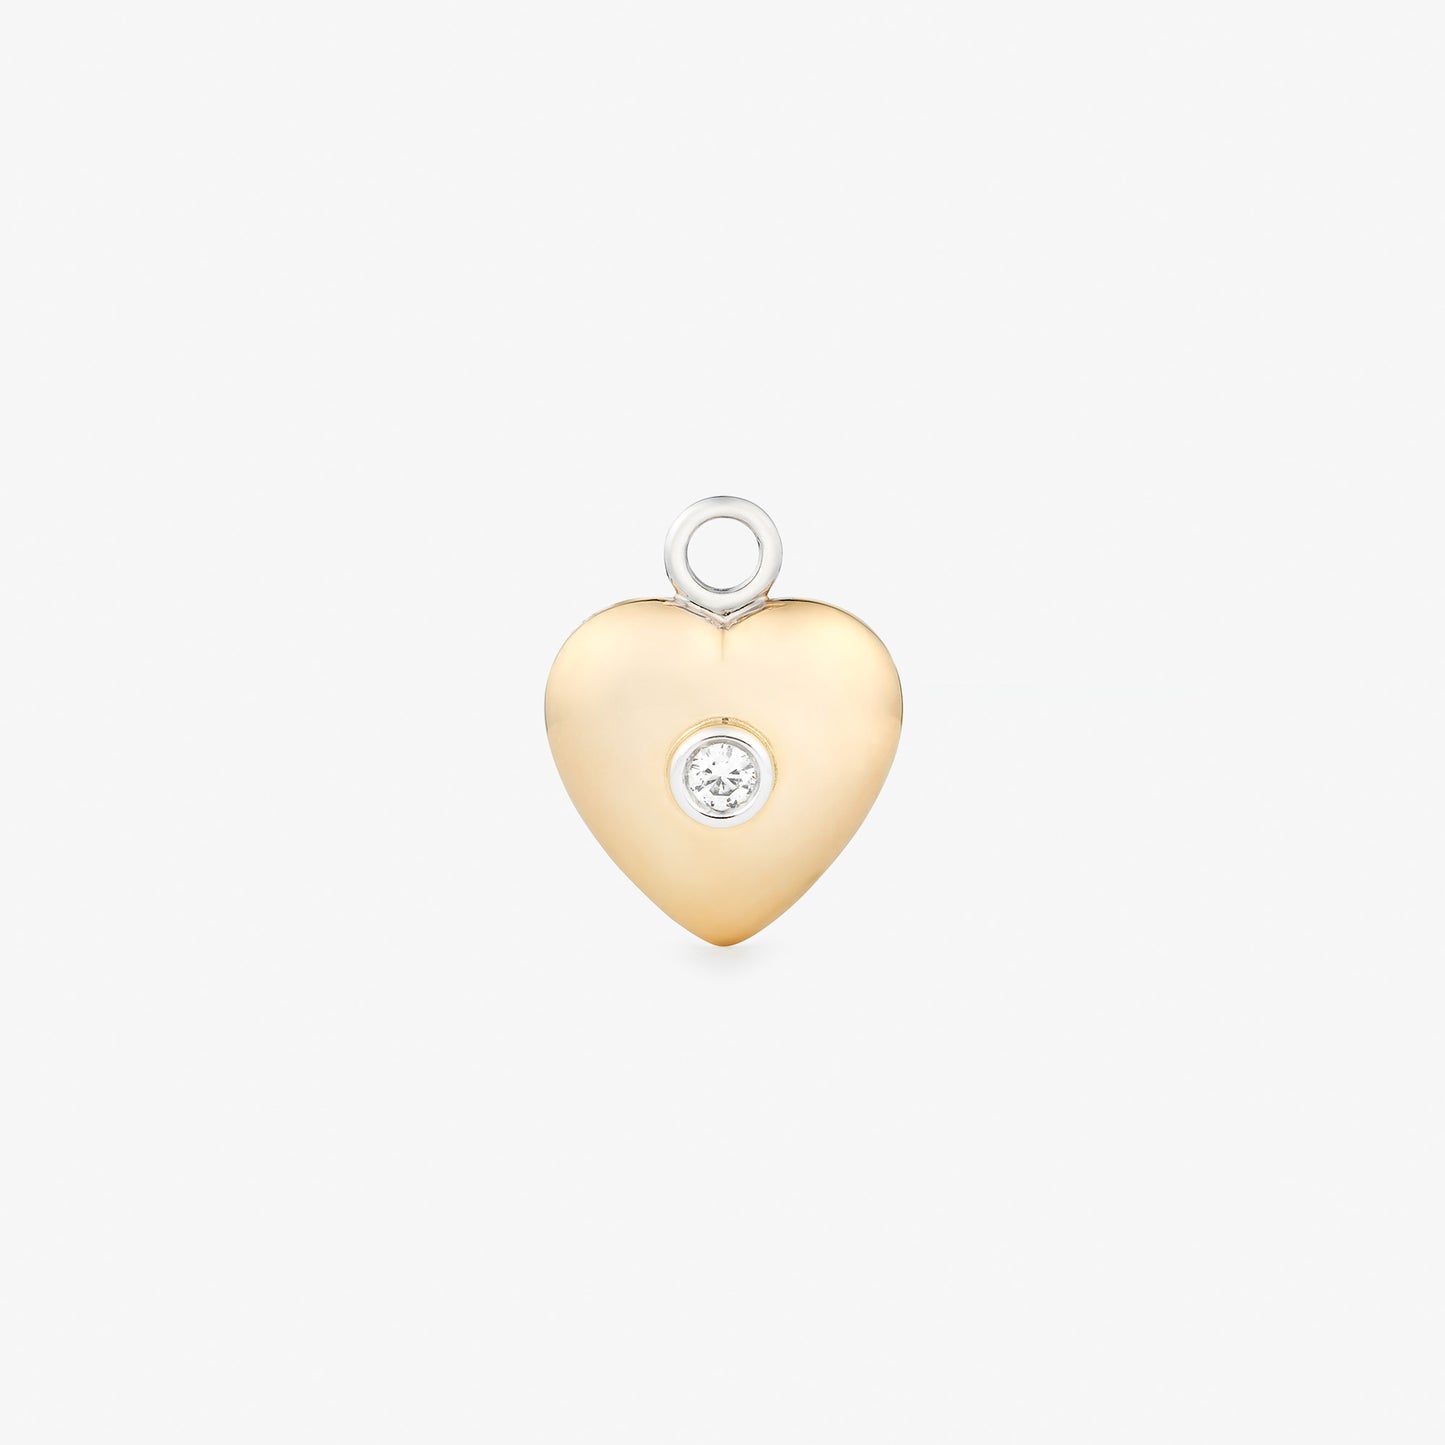 FENGAN PENDANT - WHITE DIAMOND & YELLOW GOLD